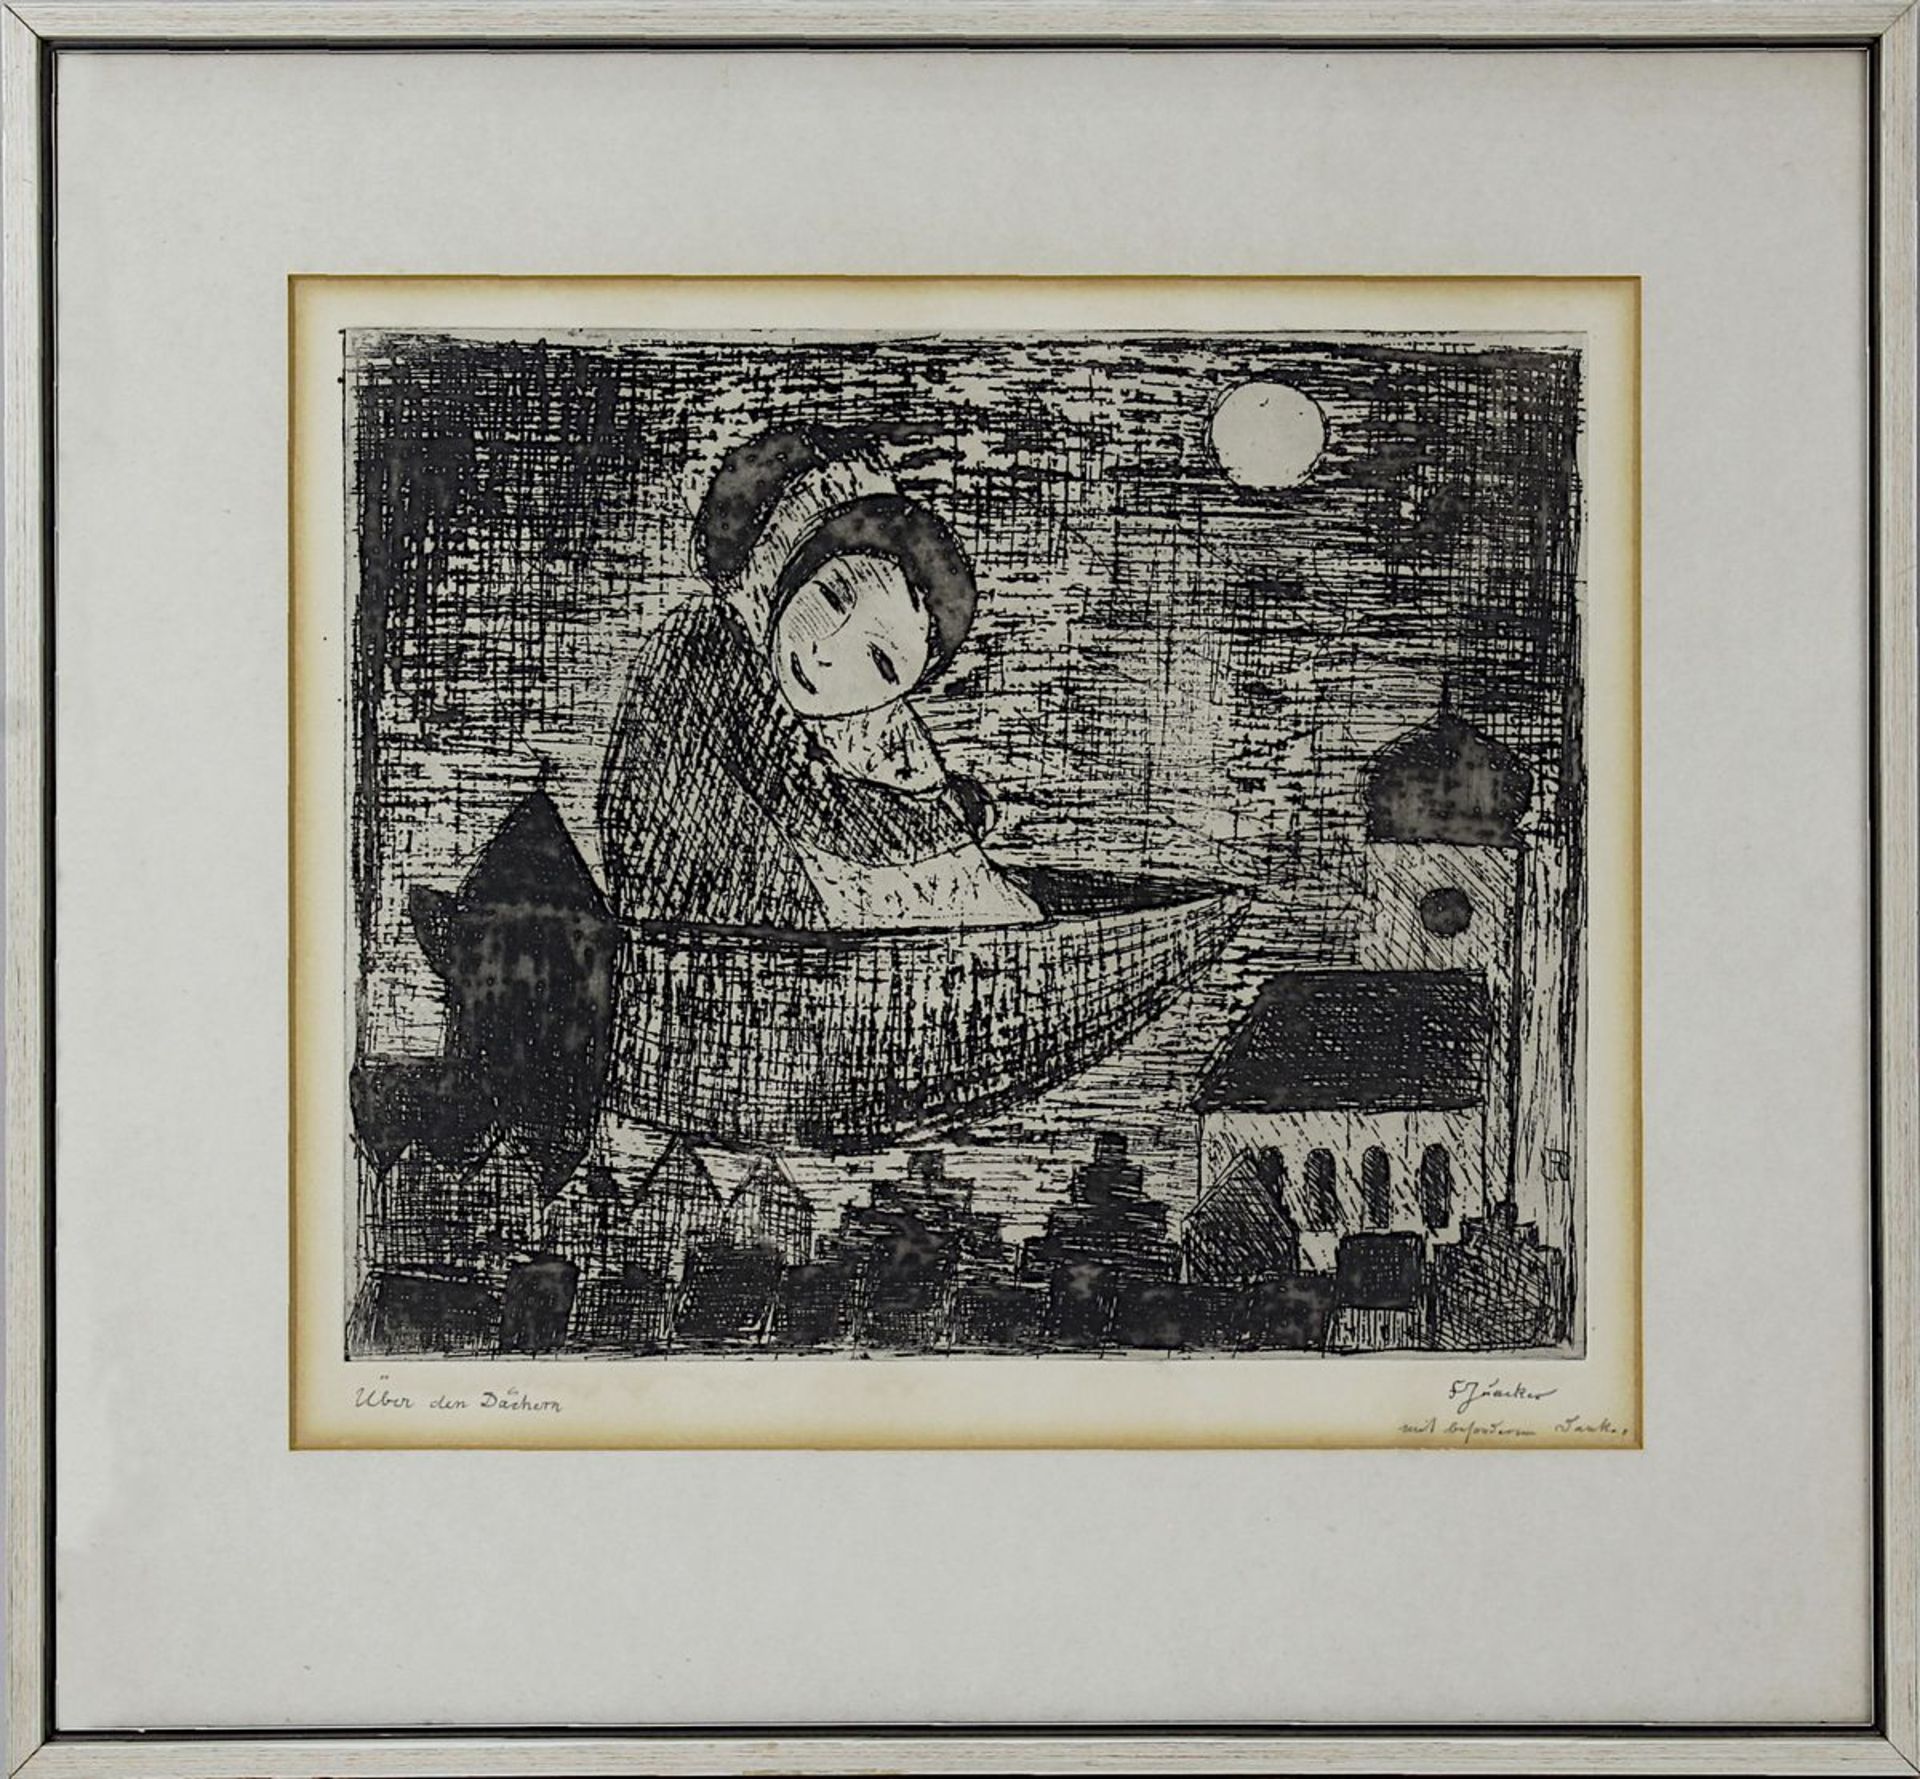 Juncker, Franz (Speyer 1899 - 1980 Homburg), "Über den Dächern", Radierung, 25 x 30 cm, am unteren